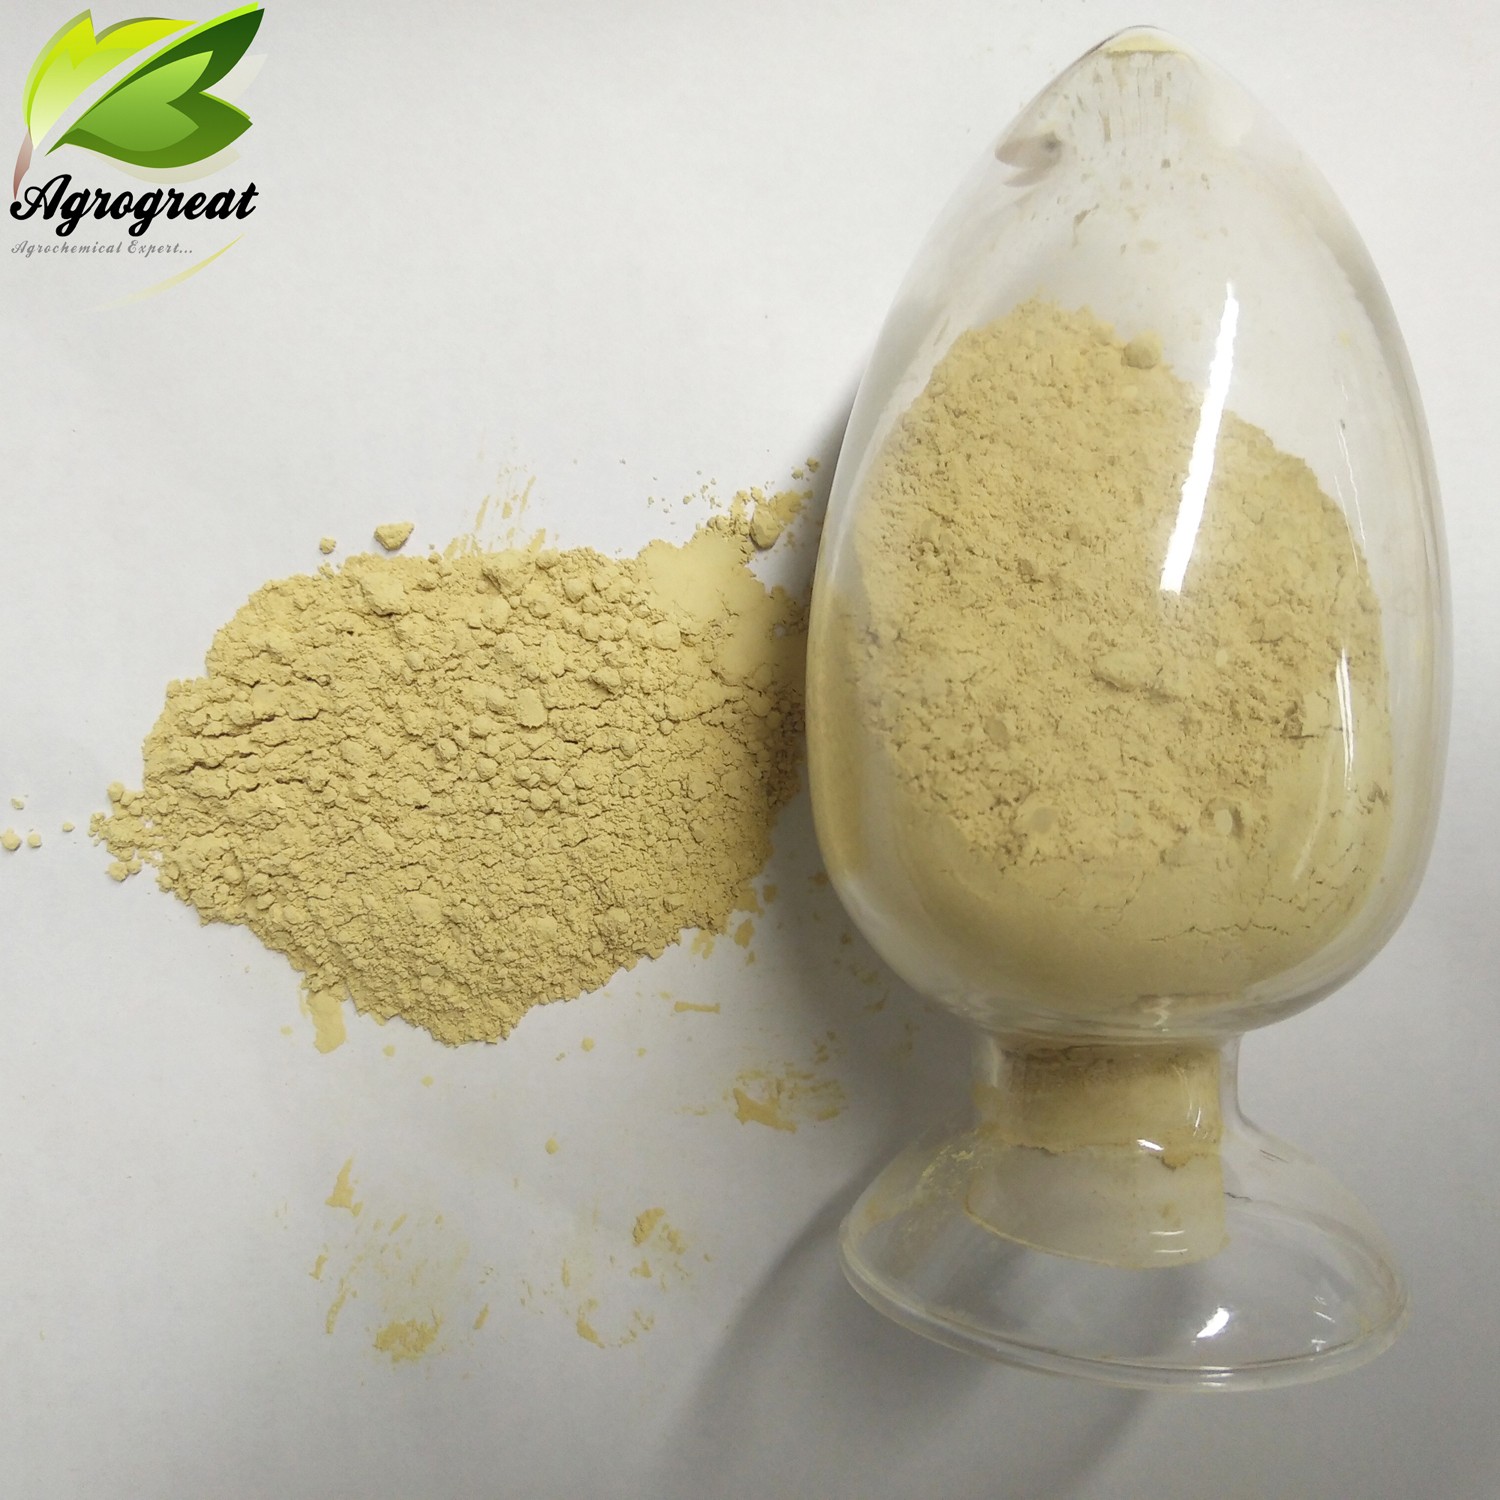 2020 hot sale fungicide mancozeb 80%WP, 64%WP, 72%WP,  powder with good quality